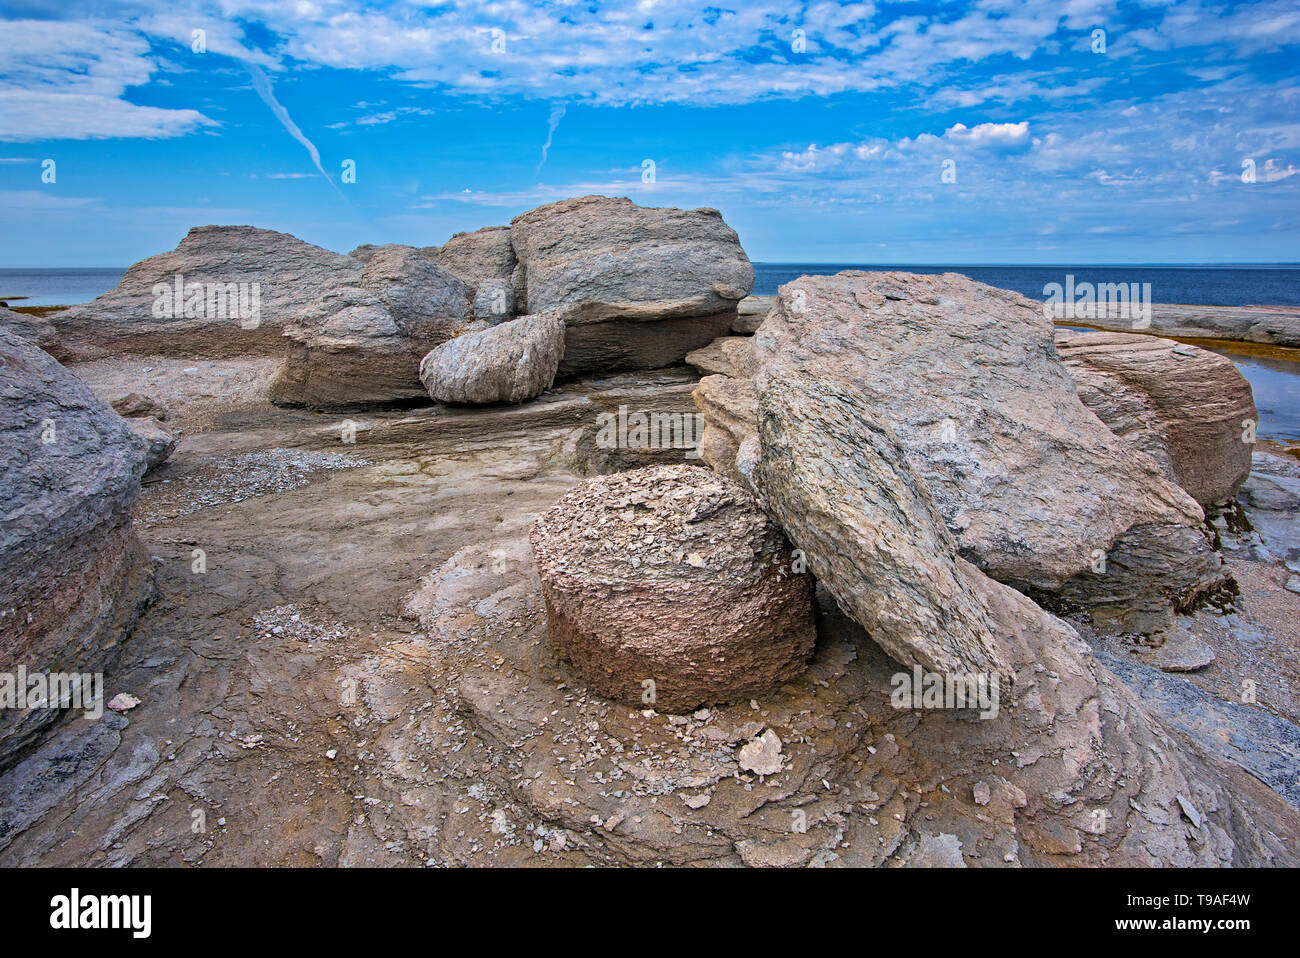 Monolith con île nue de Mingan La Reserva del Parque Nacional del Archipiélago de Mingan Quebec Canada Foto de stock